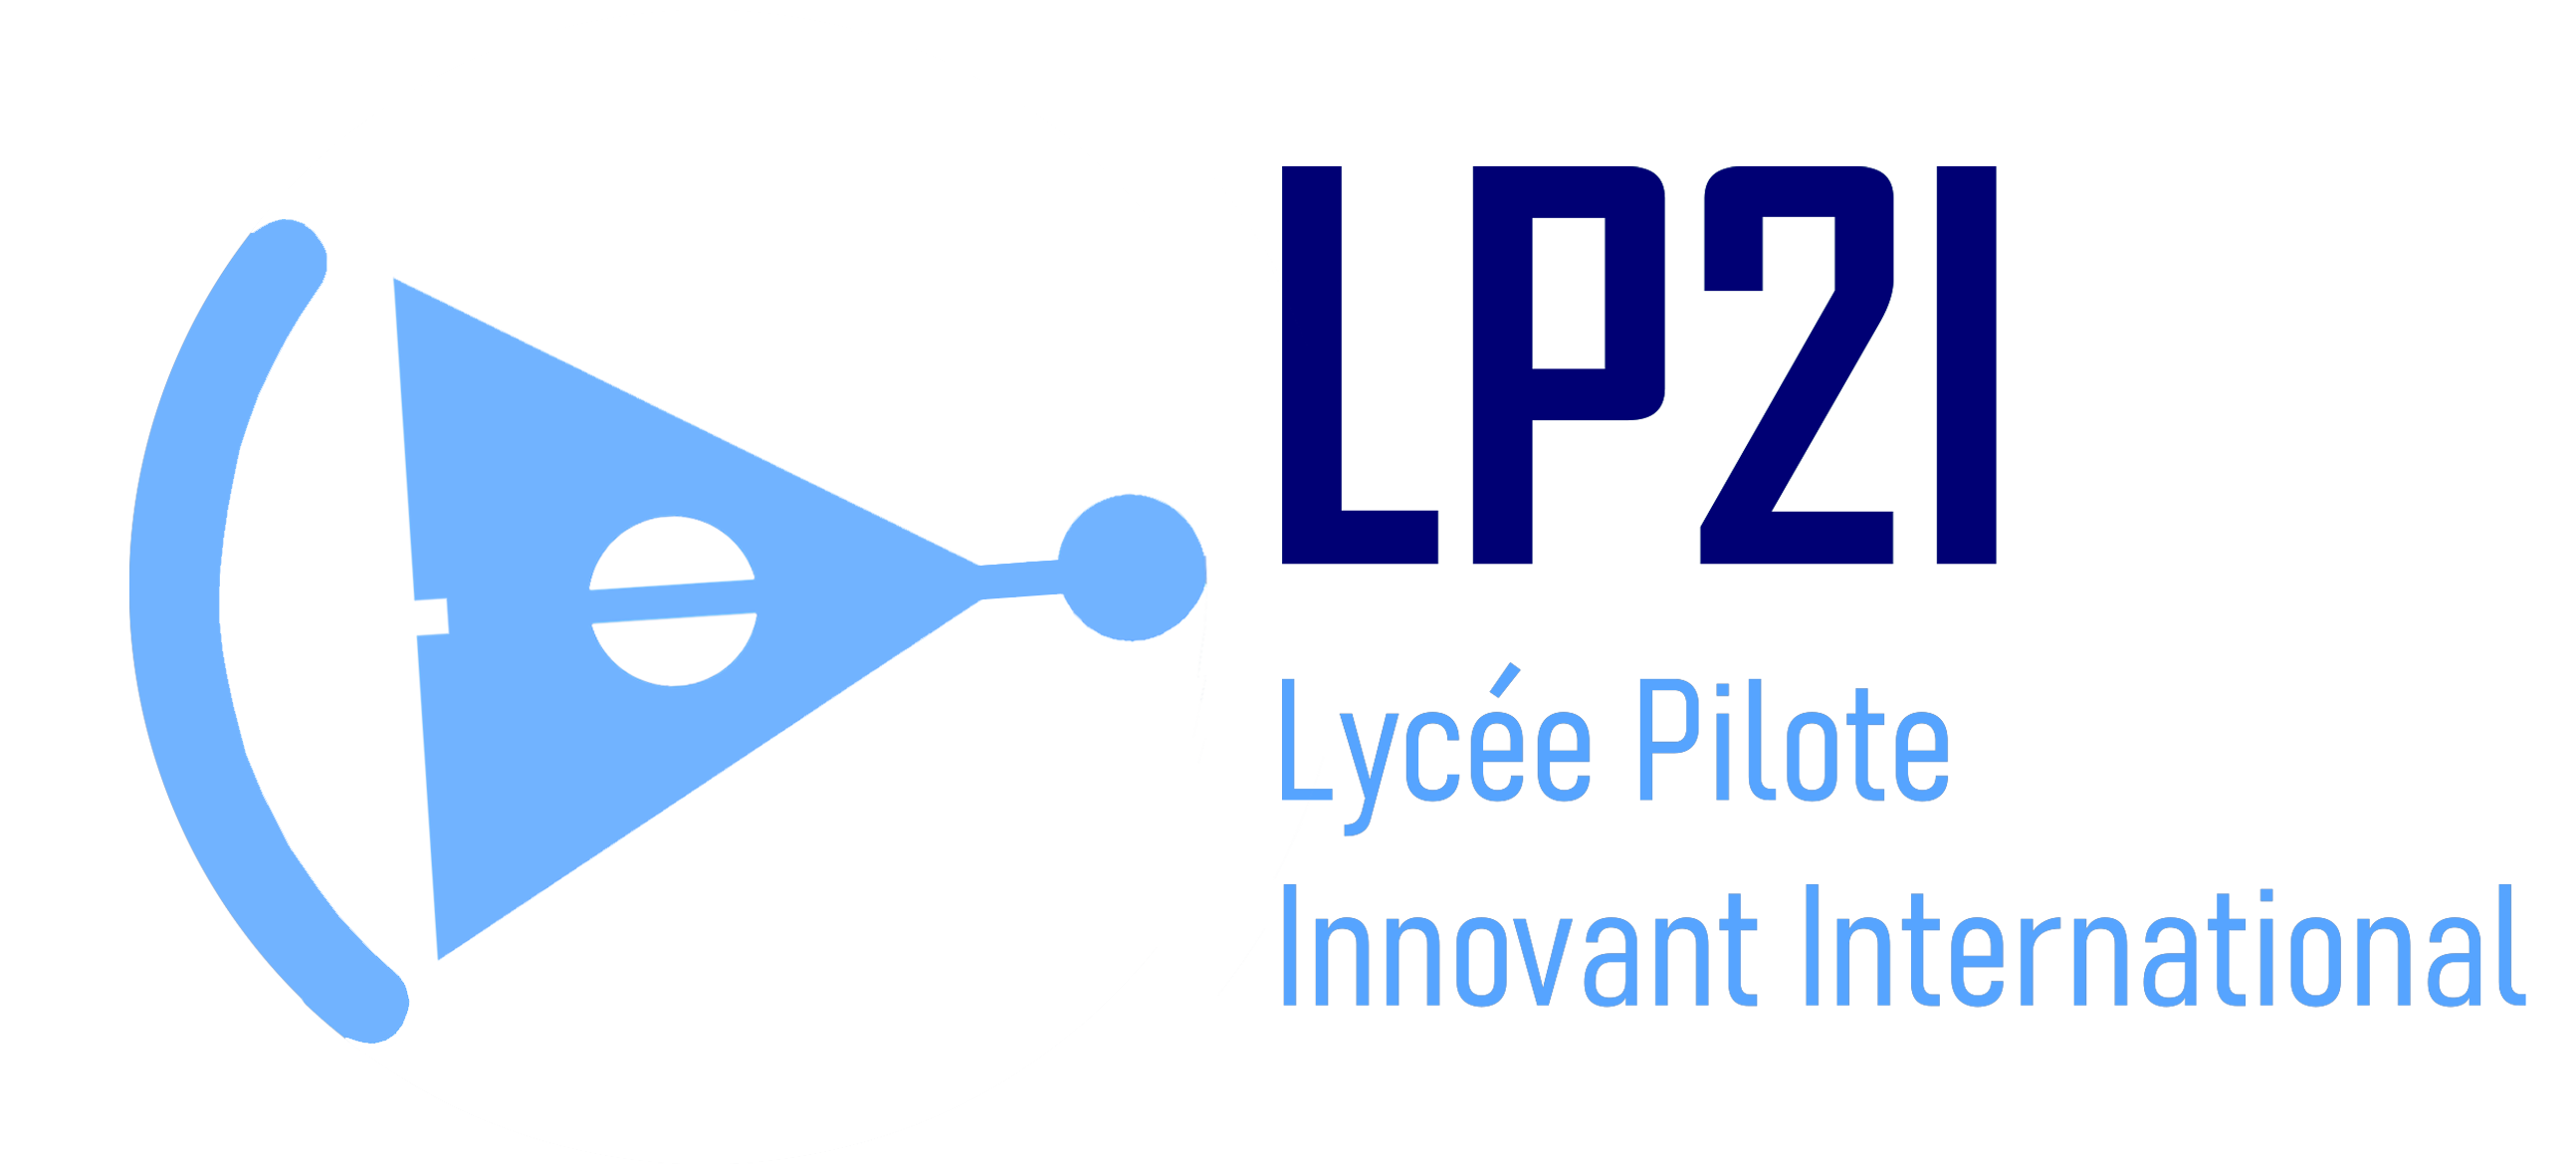 Lycée Pilote Innovant International